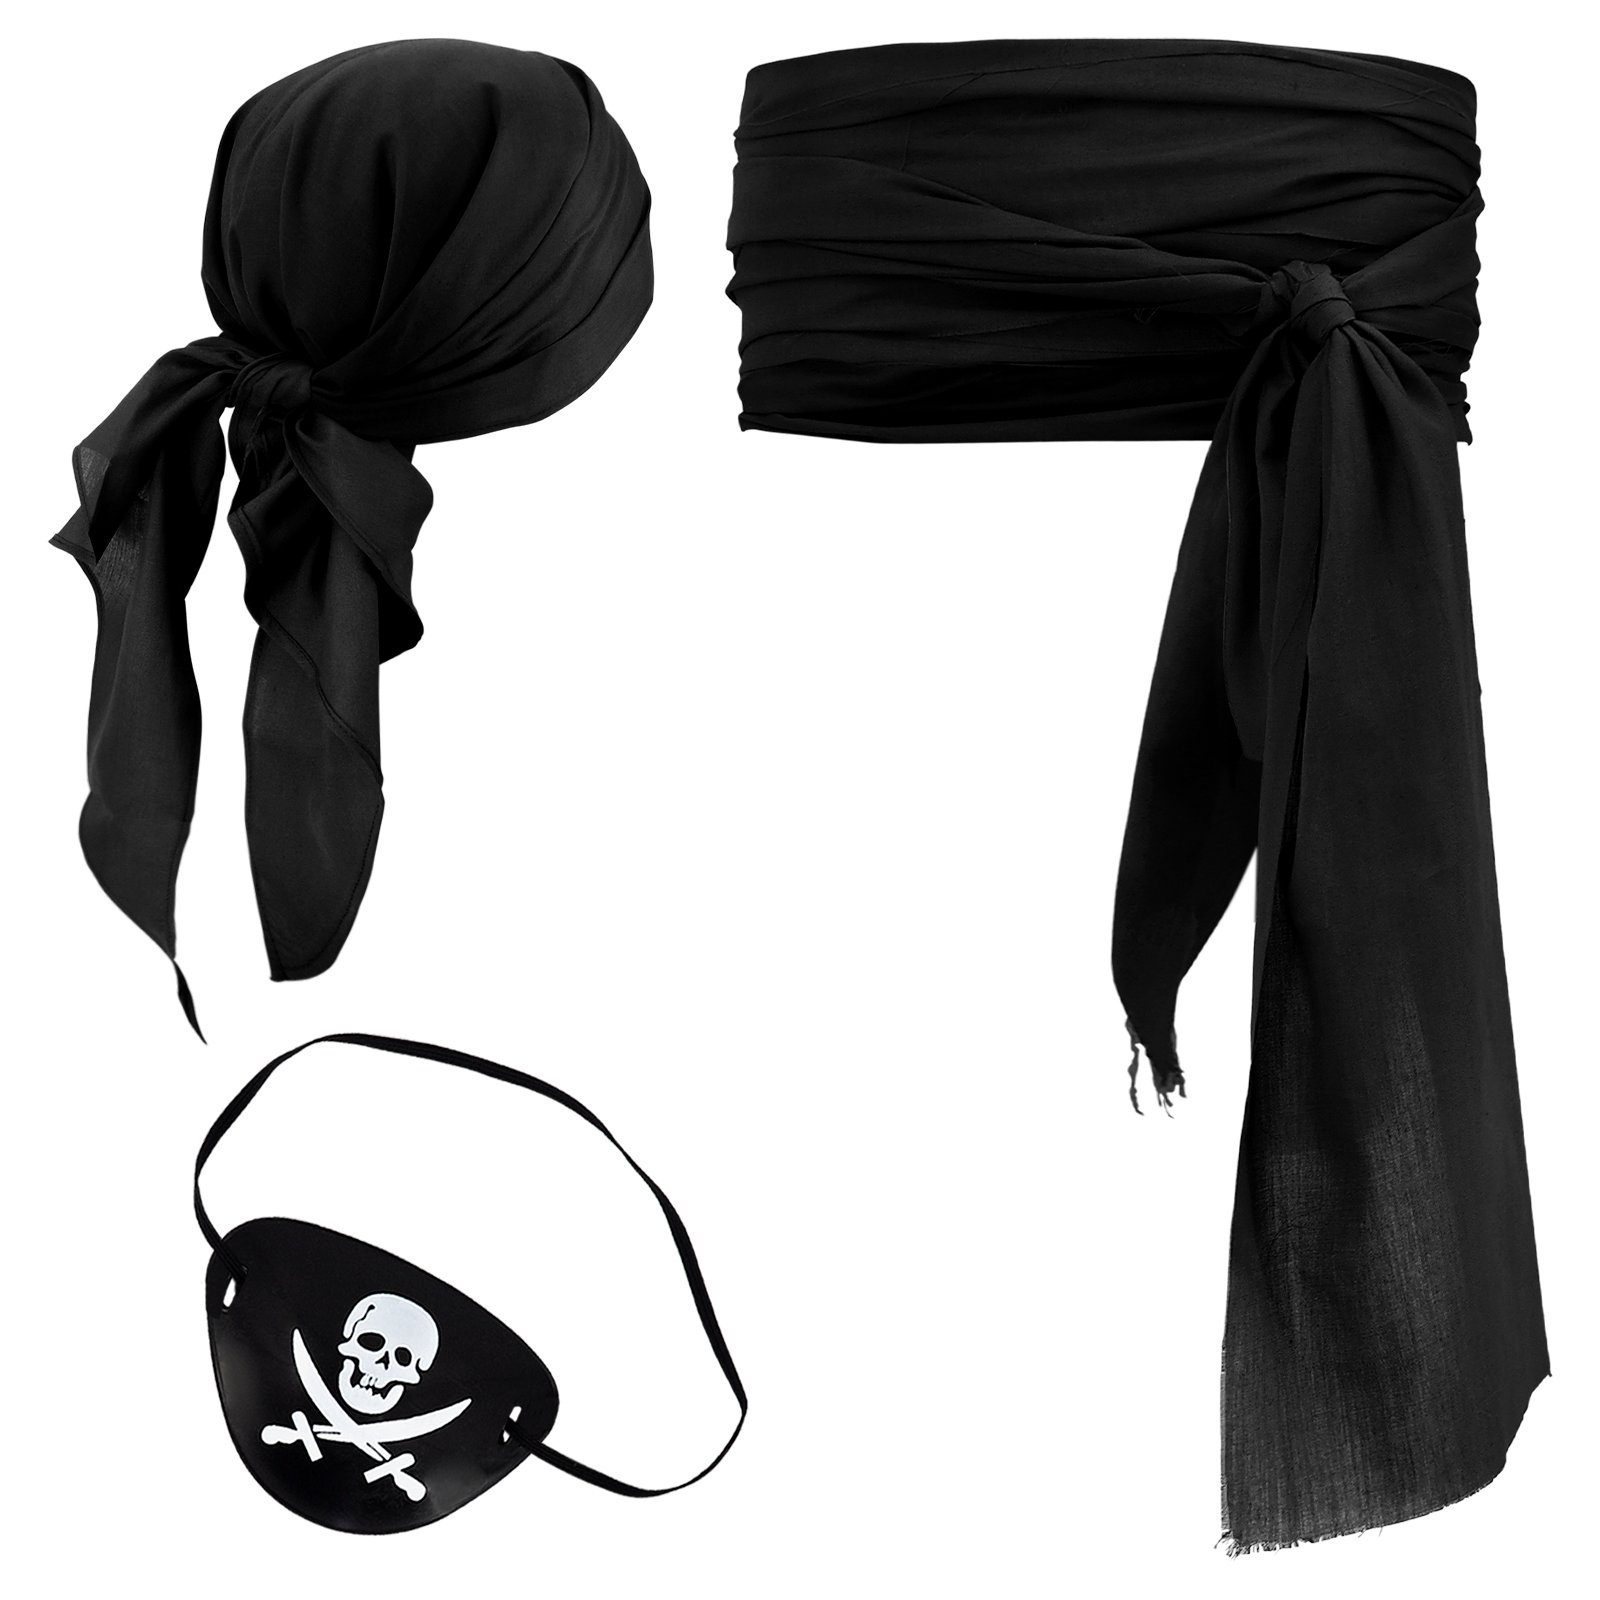 GalaxyCat Piraten-Kostüm Piraten Kostüm Set mit Kopftuch, Piratenschärpe & Augenklappe Schwarz